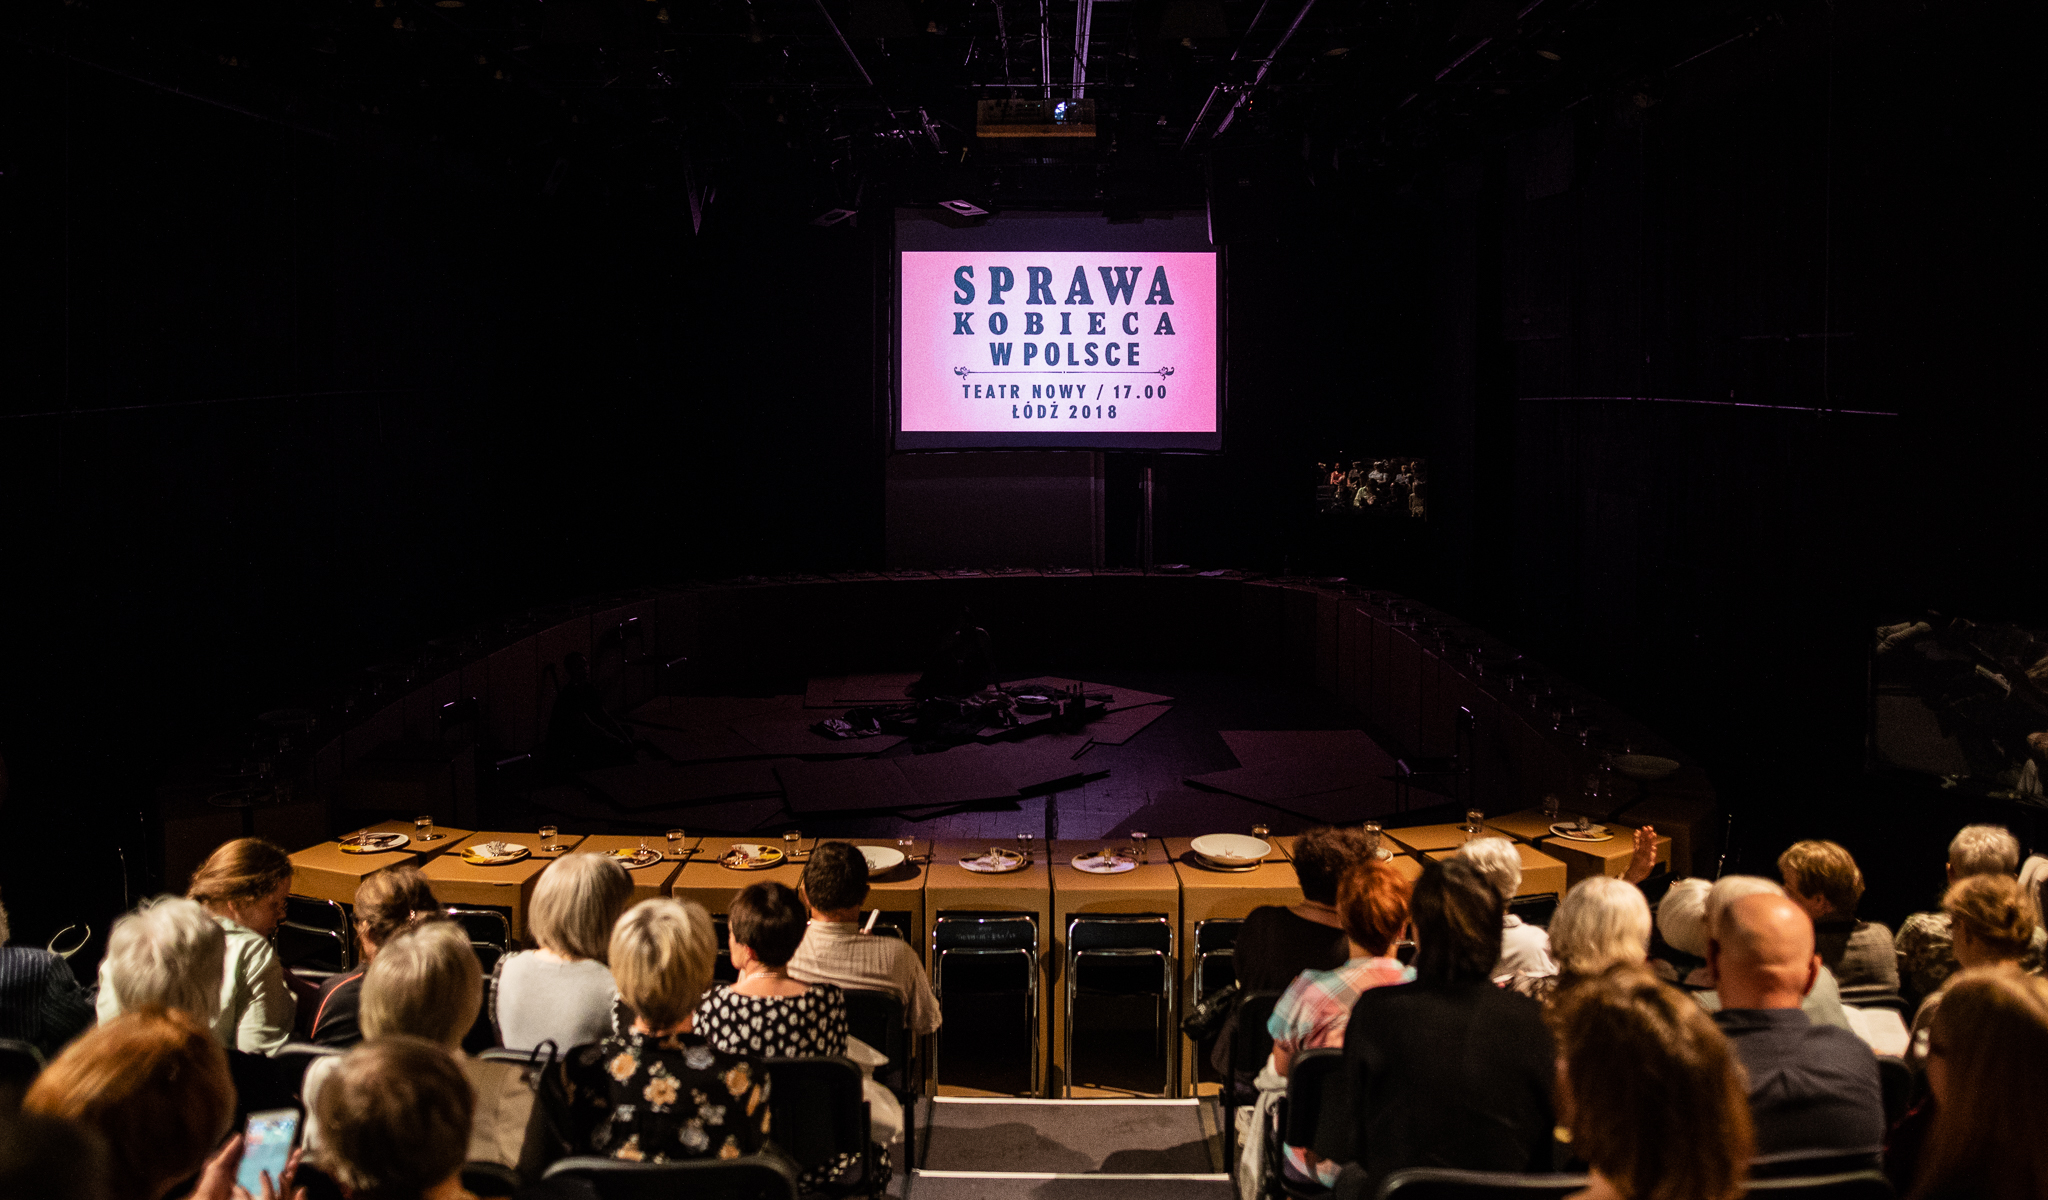 Anna Baumgart, Sprawa kobieca w Polsce, Łódź 2018, Teatr Nowy, Festiwal Łódź Czterech Kultur, premiera 8 września 2018, fot. HAWA